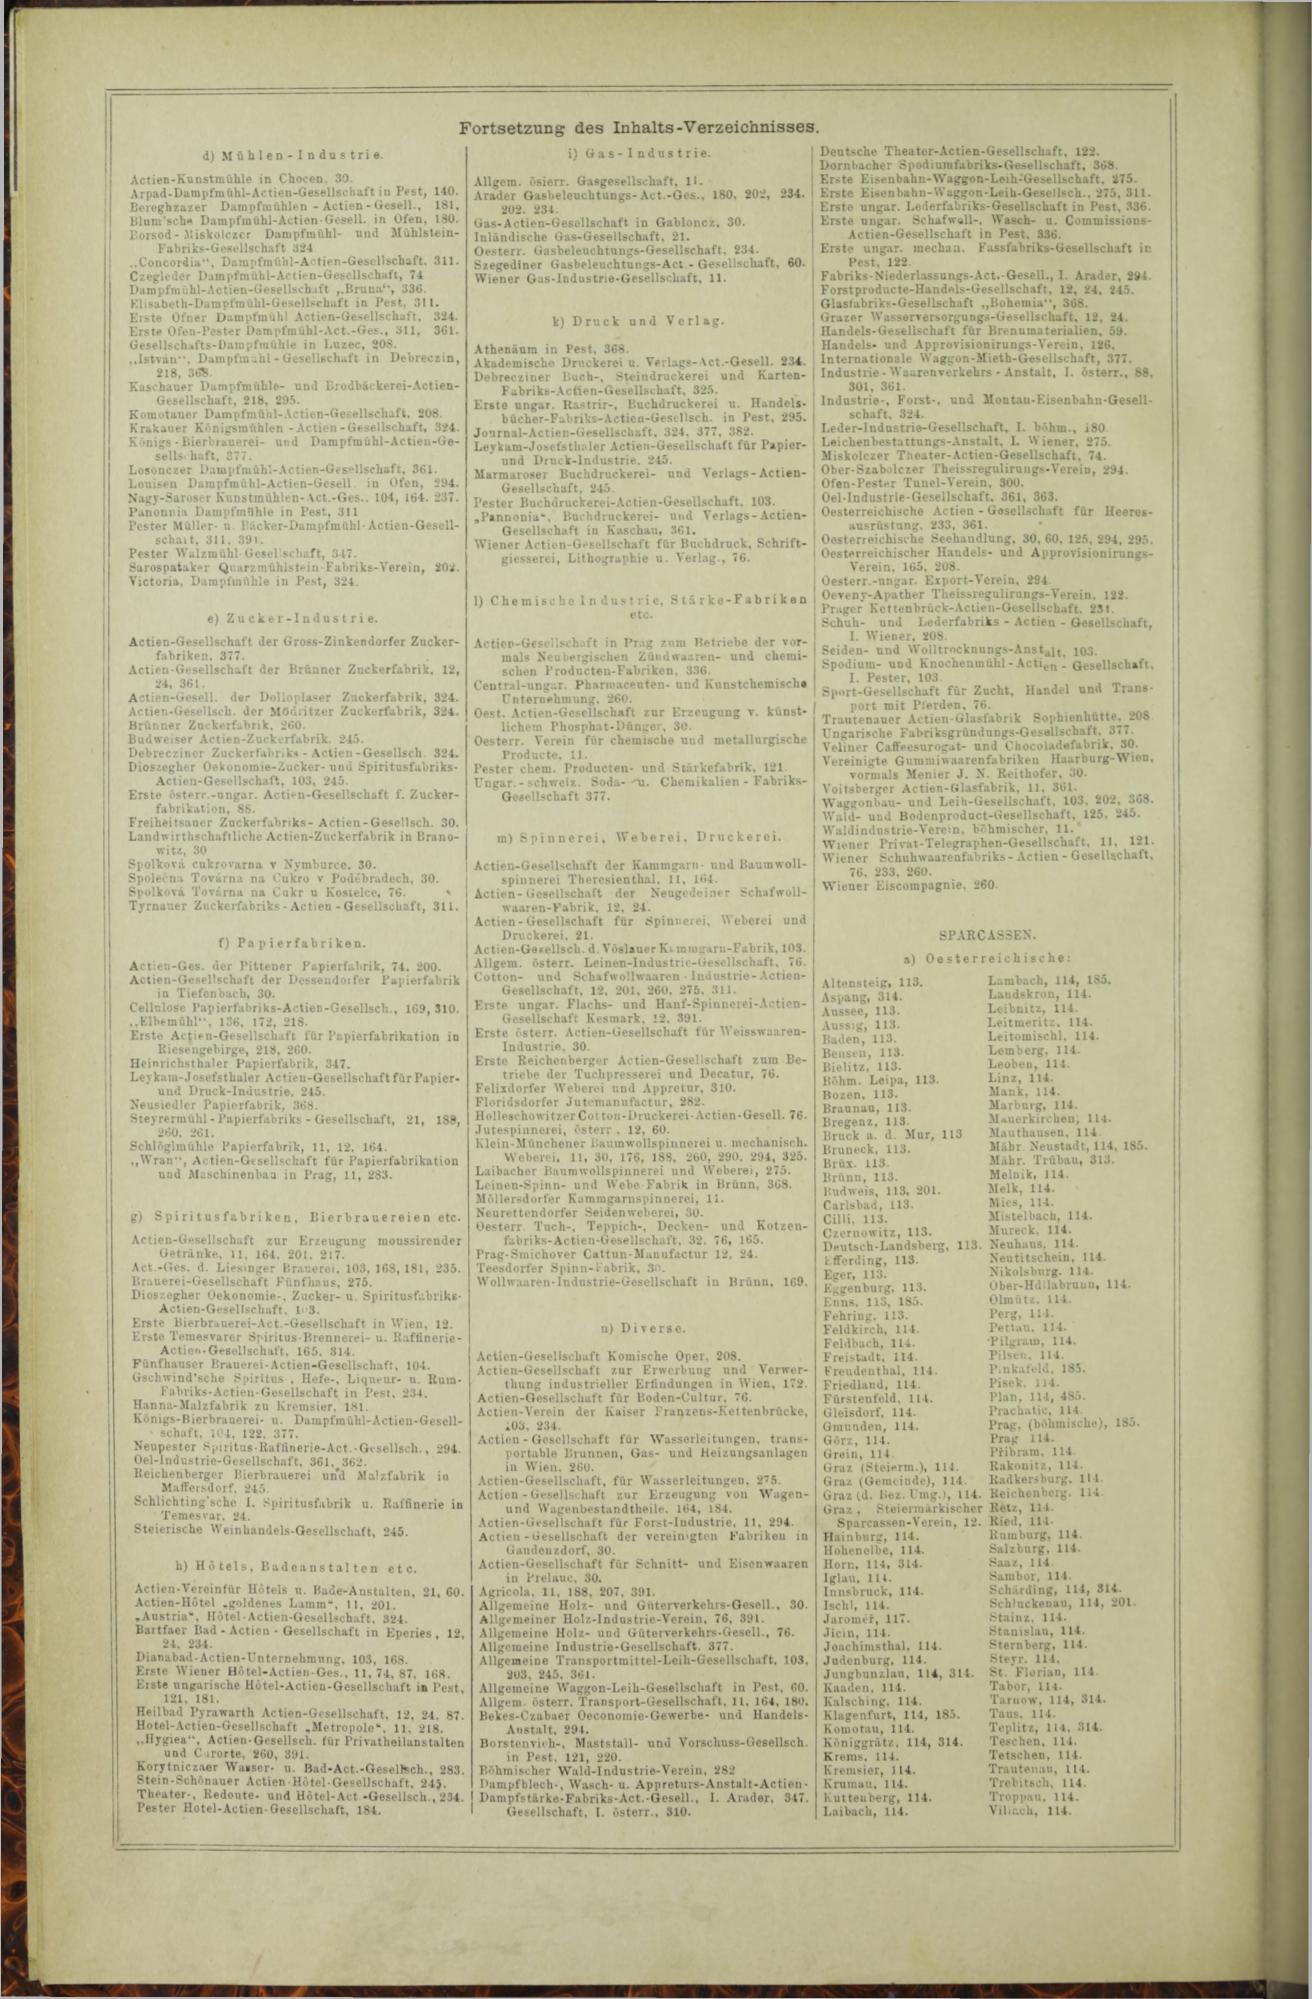 Der Tresor 21.01.1873 - Page 20